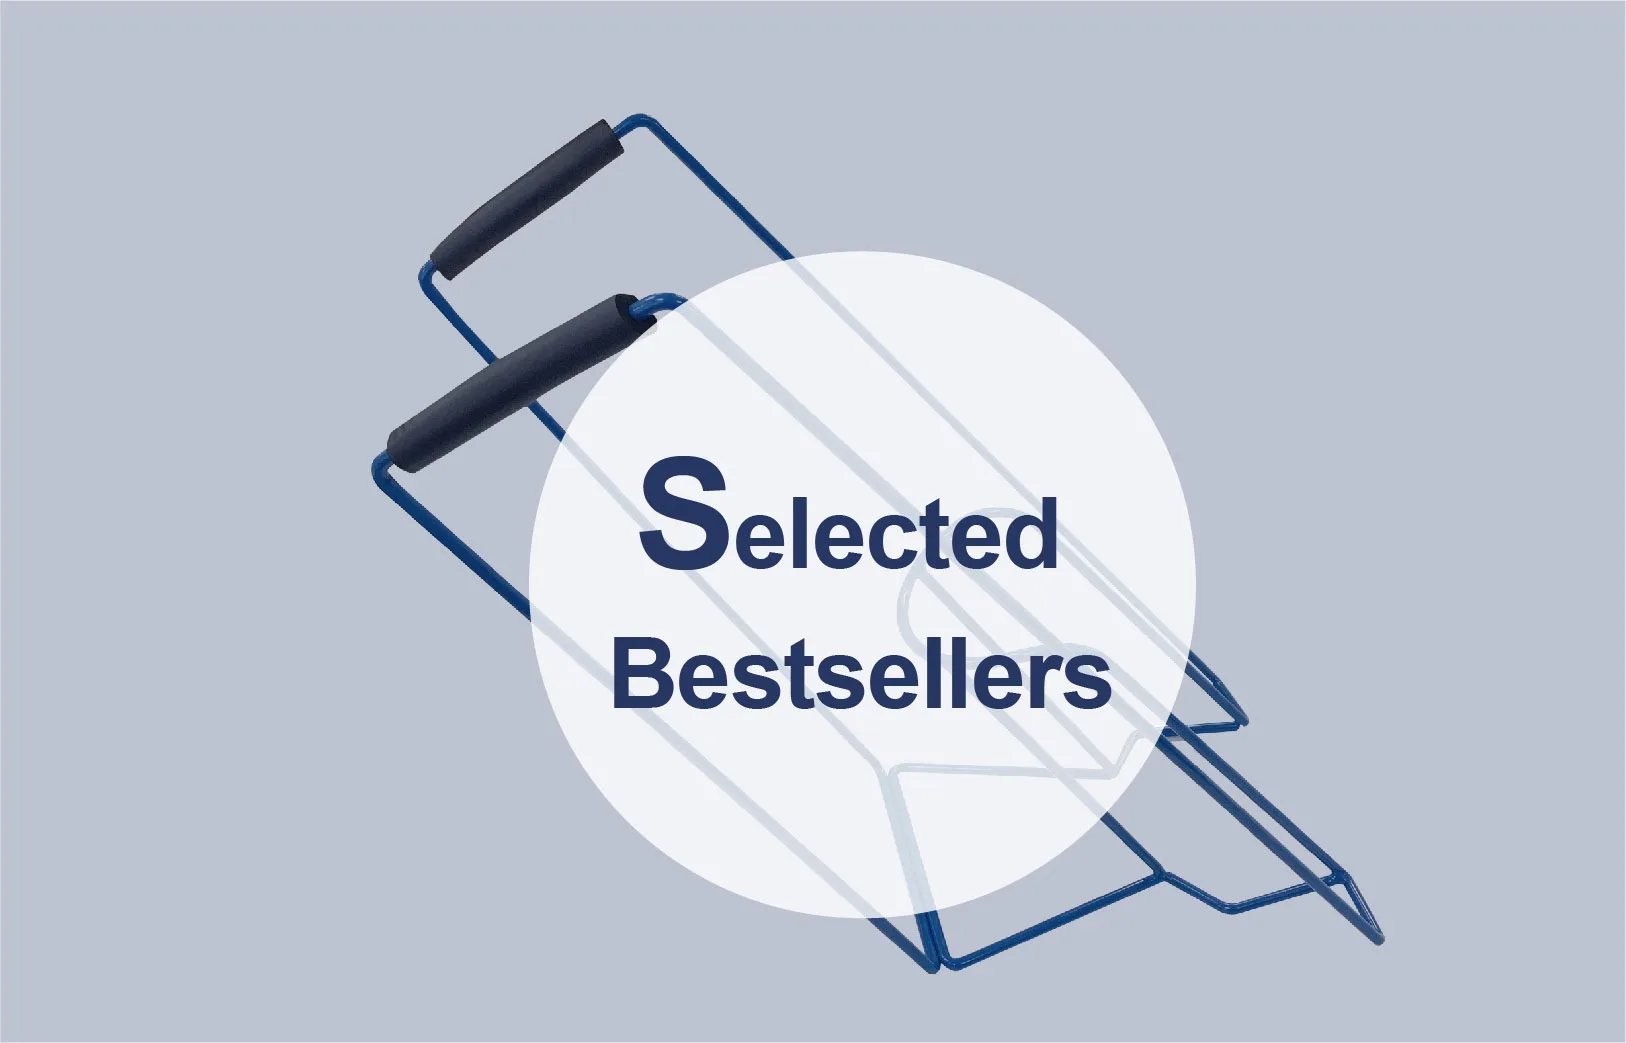 Selected Bestsellers